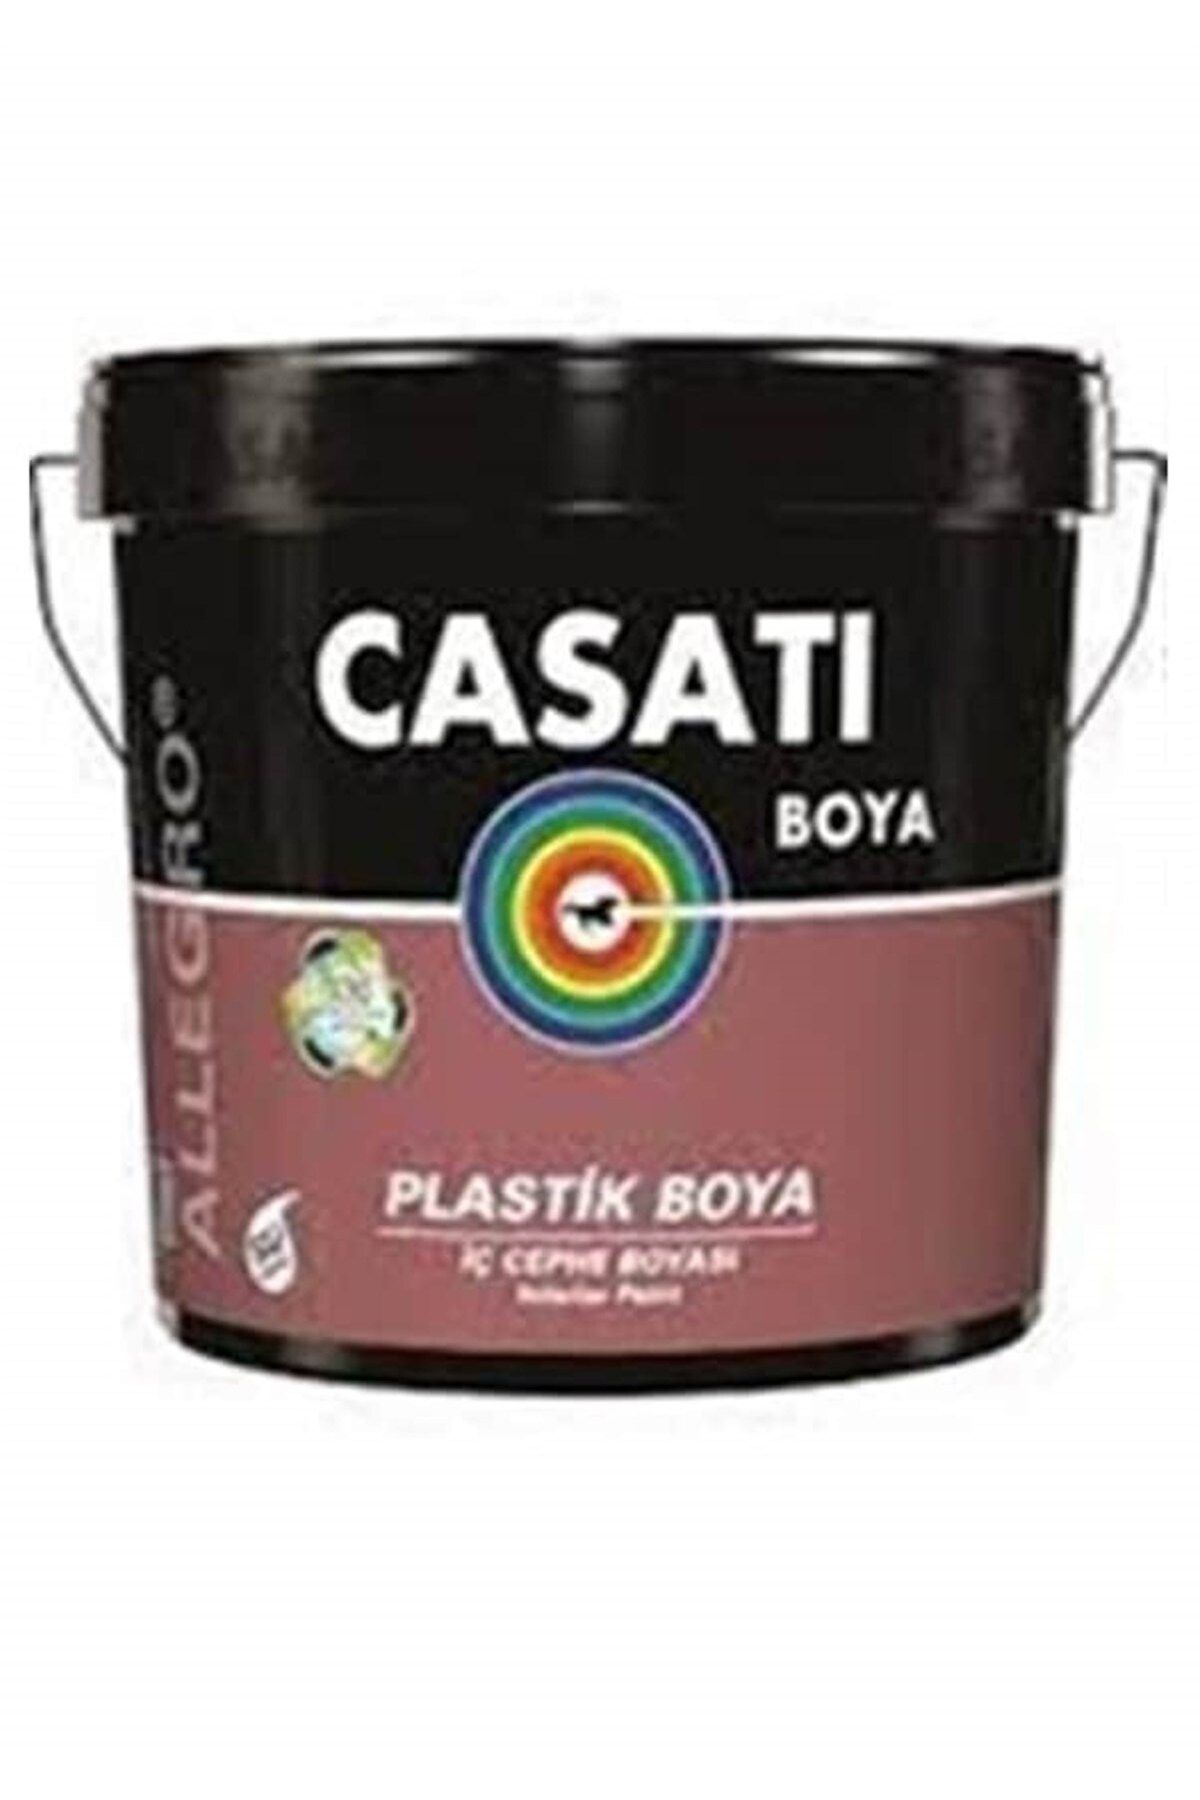 Casati Dyo Casati Allegro Plastik Iç Cephe Duvar Boyası 10 kg Tüm Renkler Mevcuttur